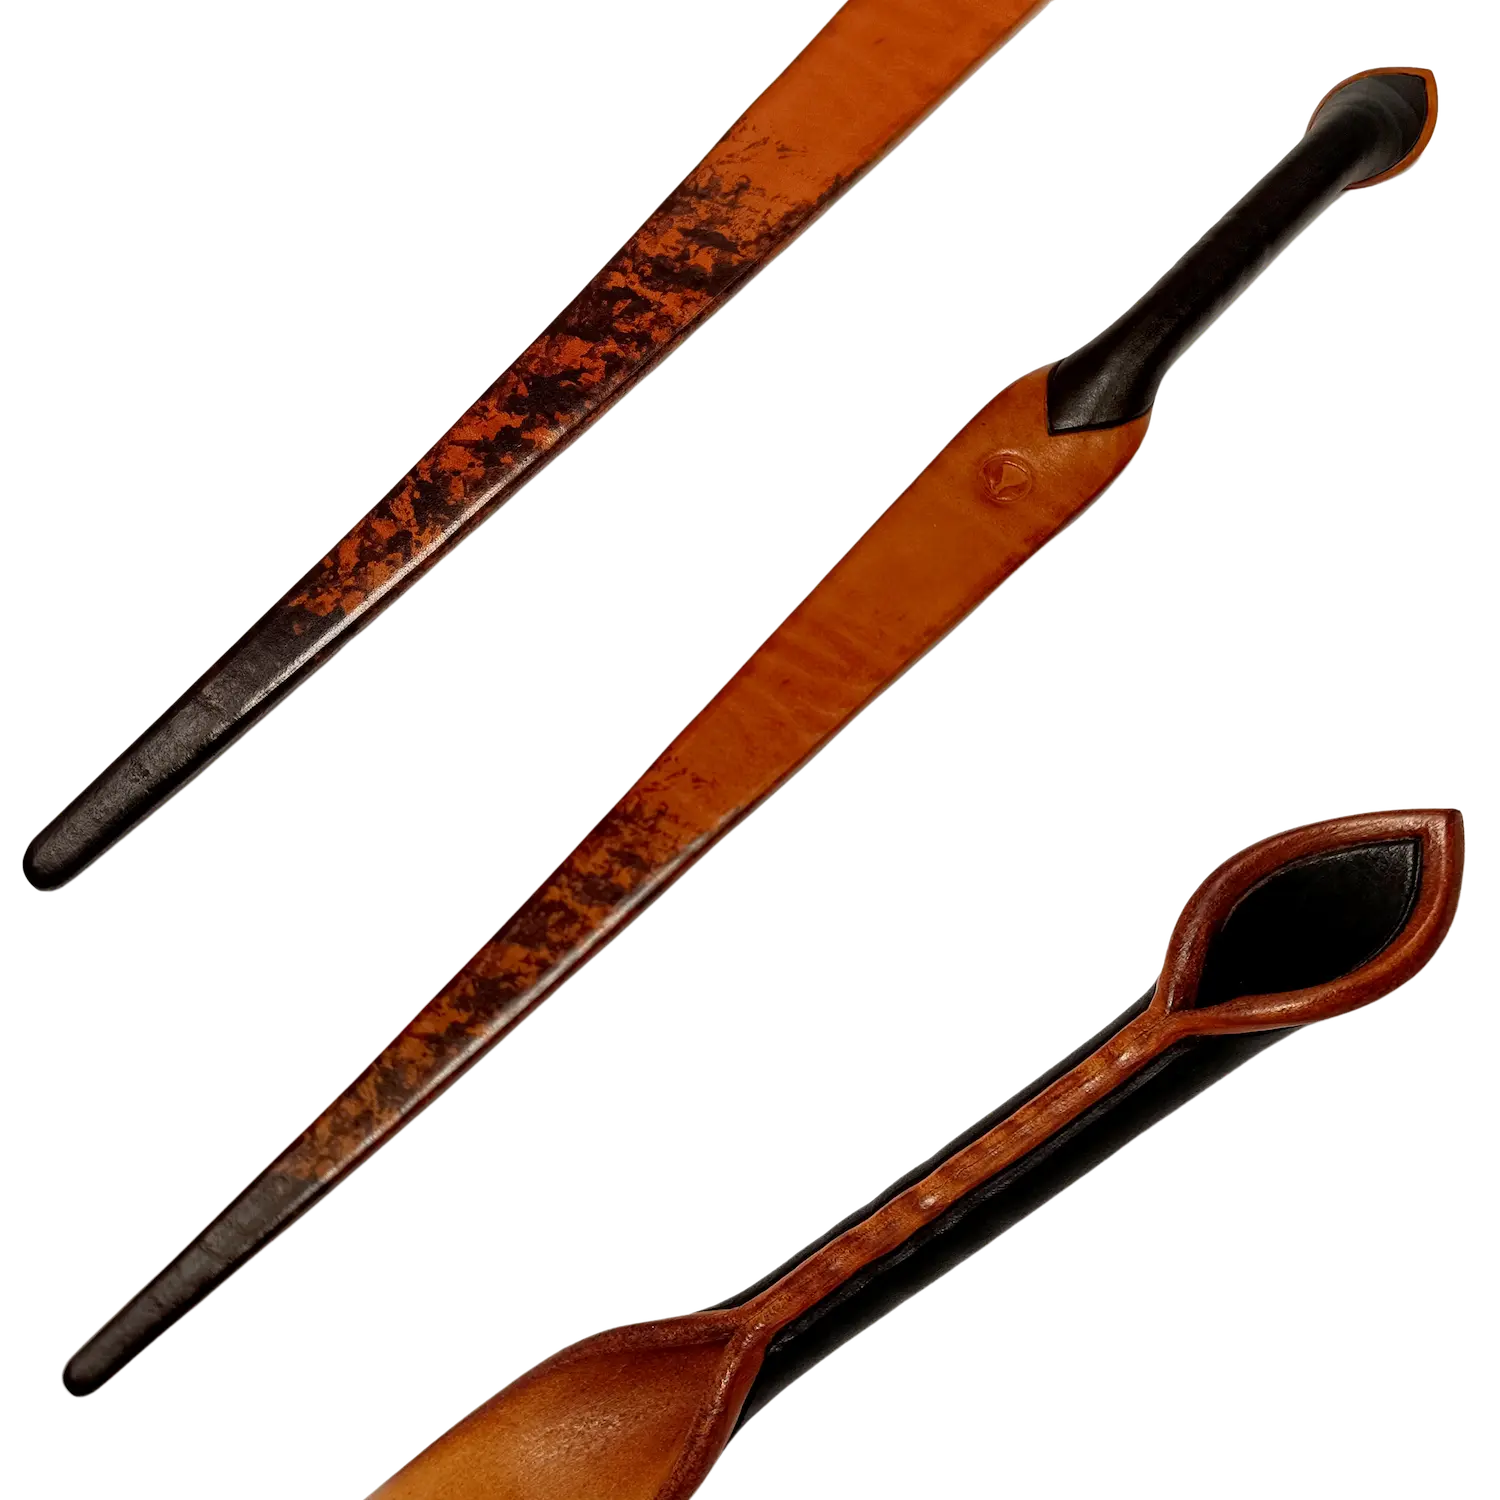 Plácačka ze silné barvené a leštěné kůže ve tvaru nože v oranžové barvě s černou rukojetí. Cena 3000 Kč